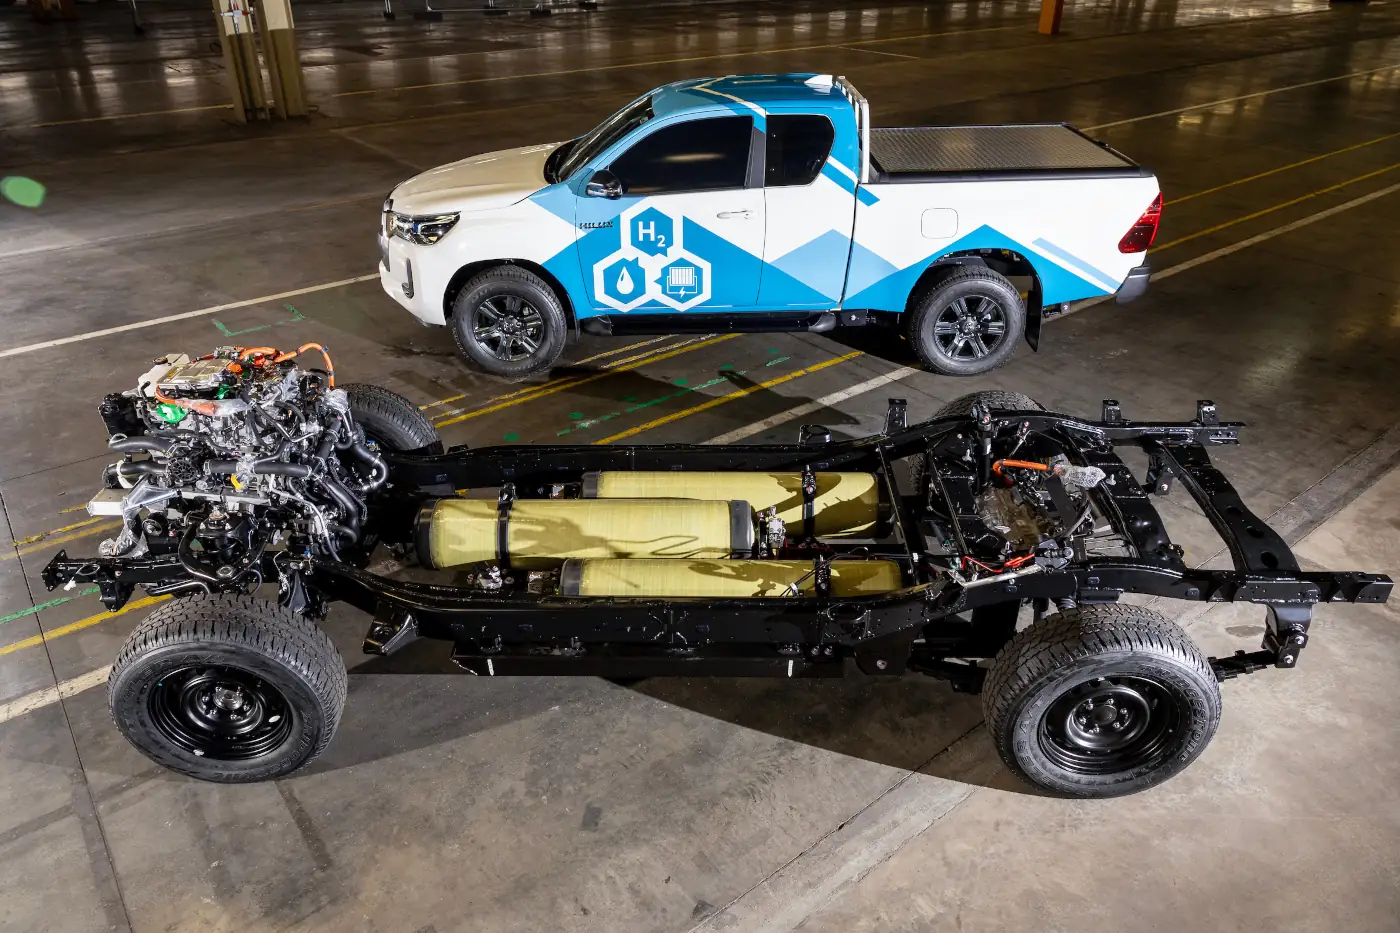 Toyota schickt Wasserstoff-Hilux auf Testfahrt